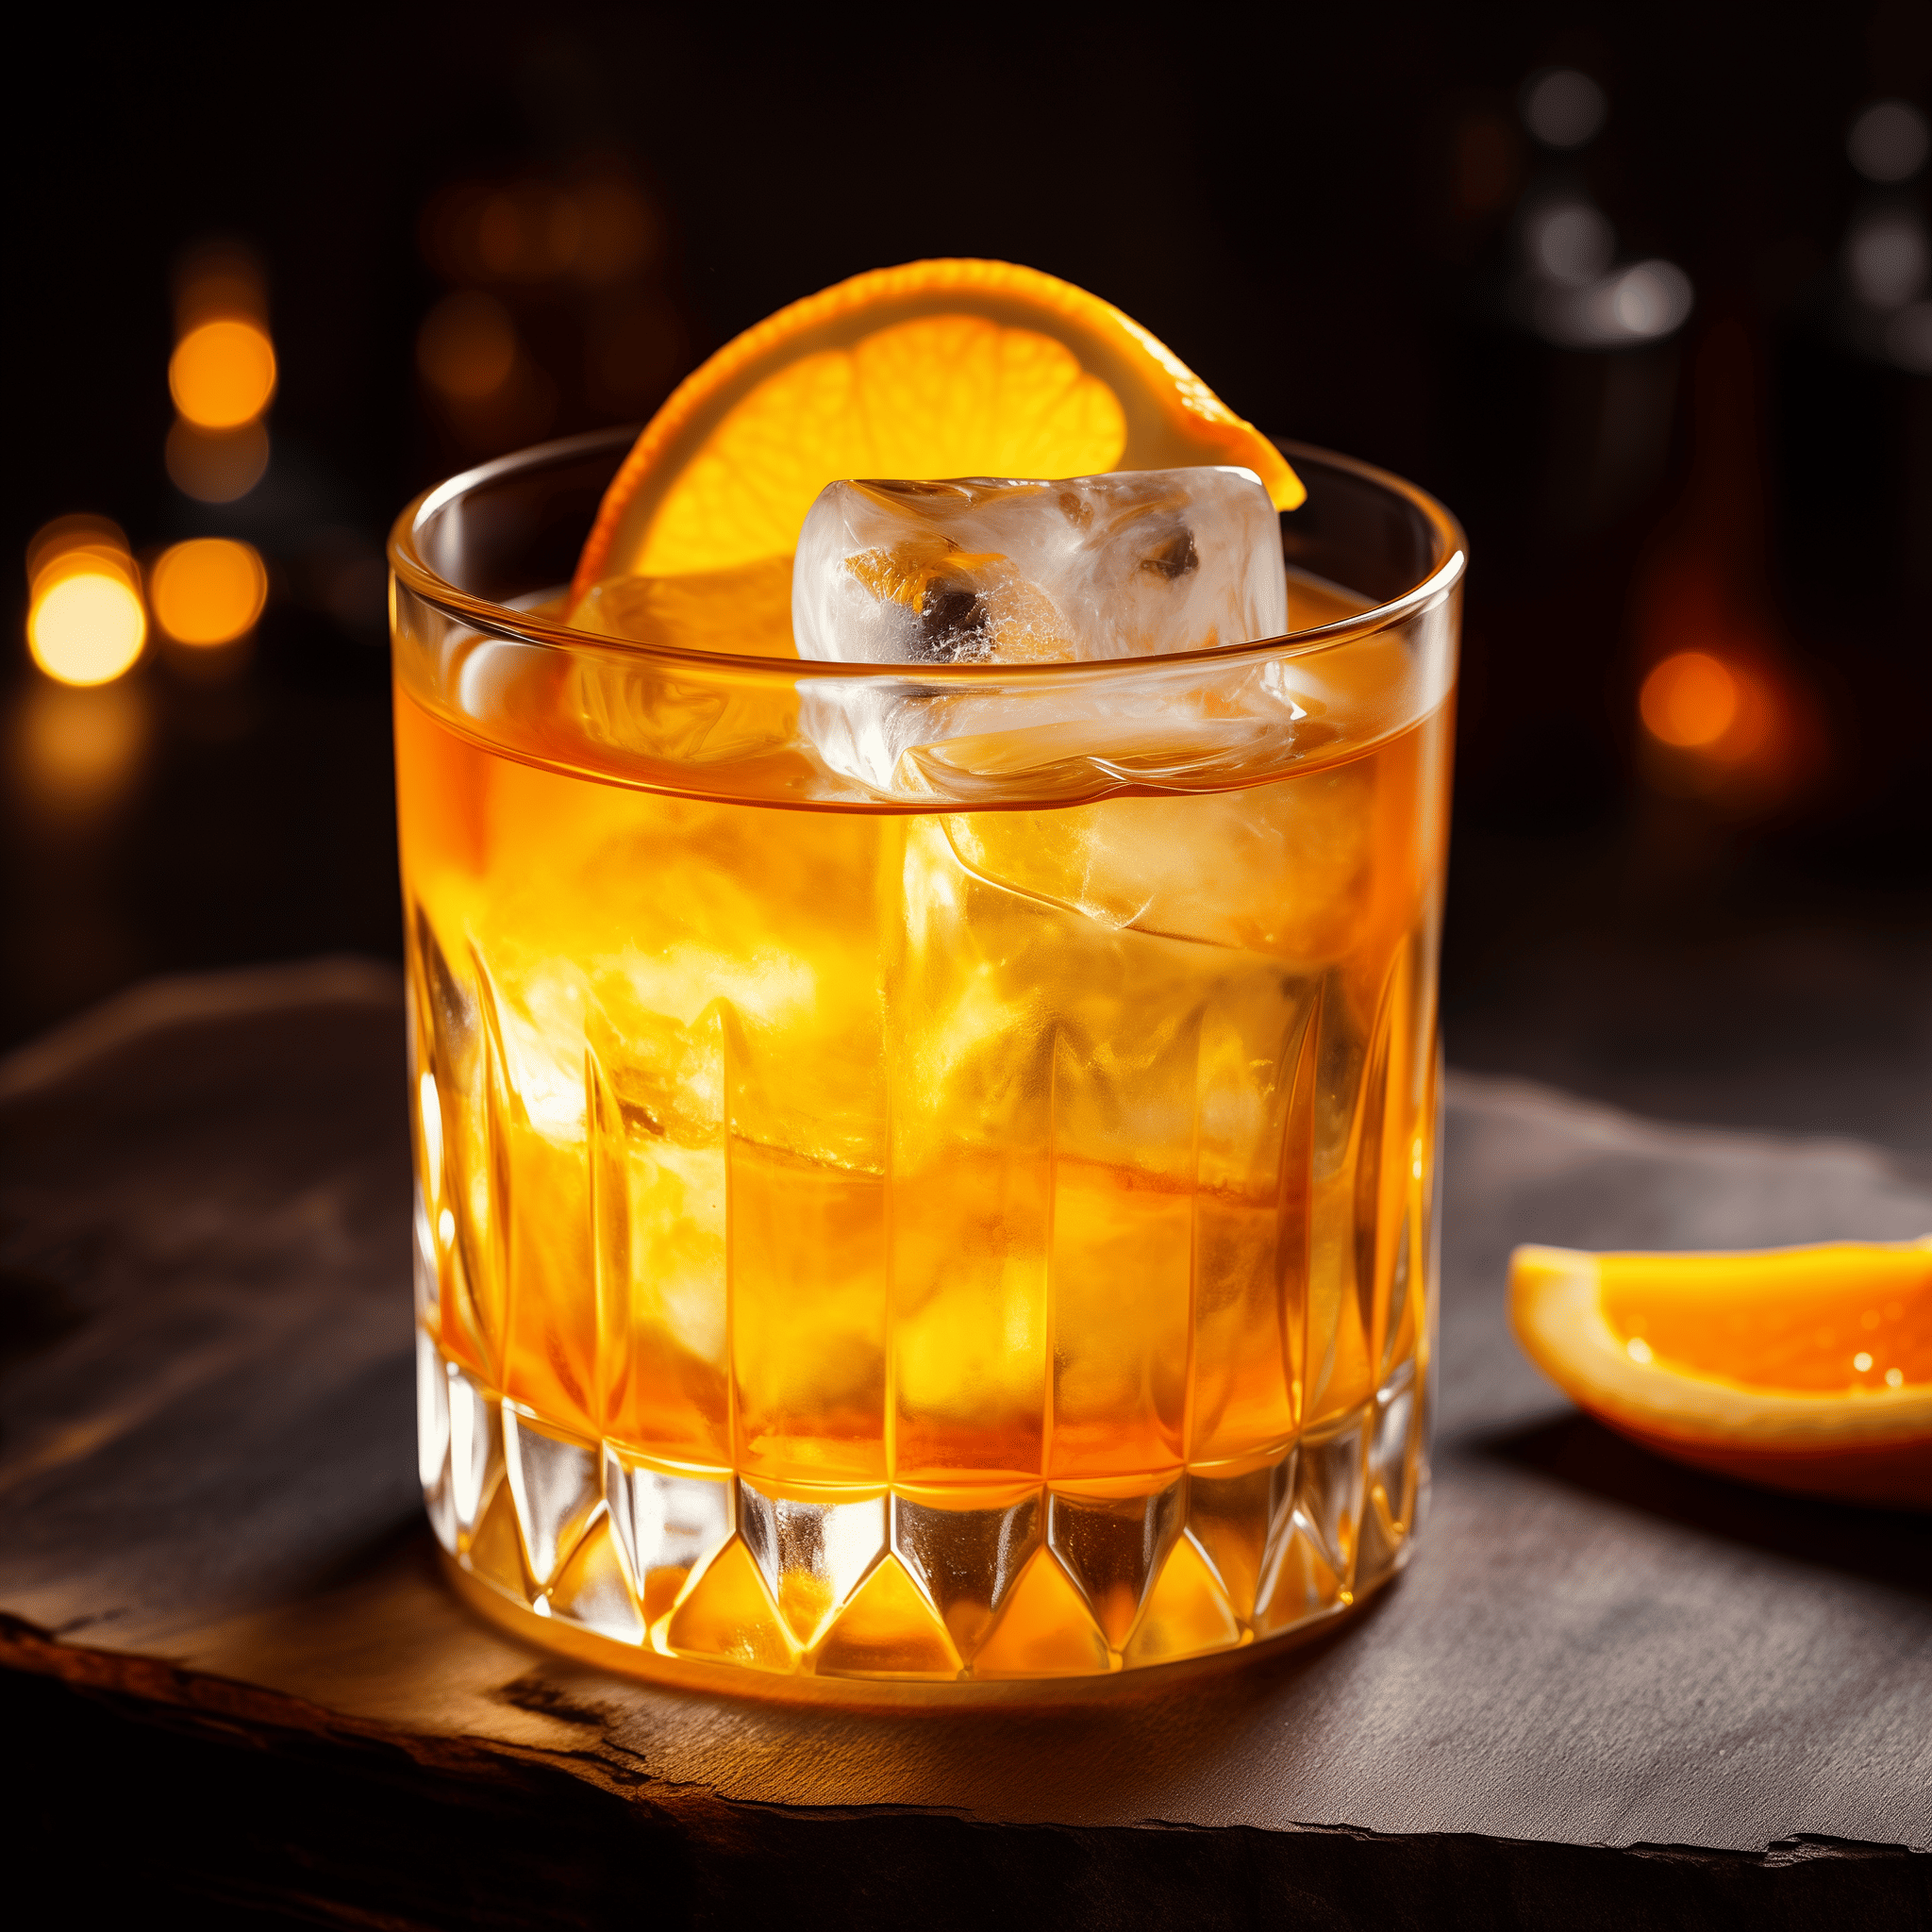 Bourbon Breeze Cóctel Receta - El Bourbon Breeze ofrece una mezcla armoniosa de calidez del bourbon, acidez del jugo de arándano y un toque cítrico de los cítricos frescos. Es una bebida audaz pero equilibrada con un perfil dulce y ácido que termina con un suave regusto a whiskey.